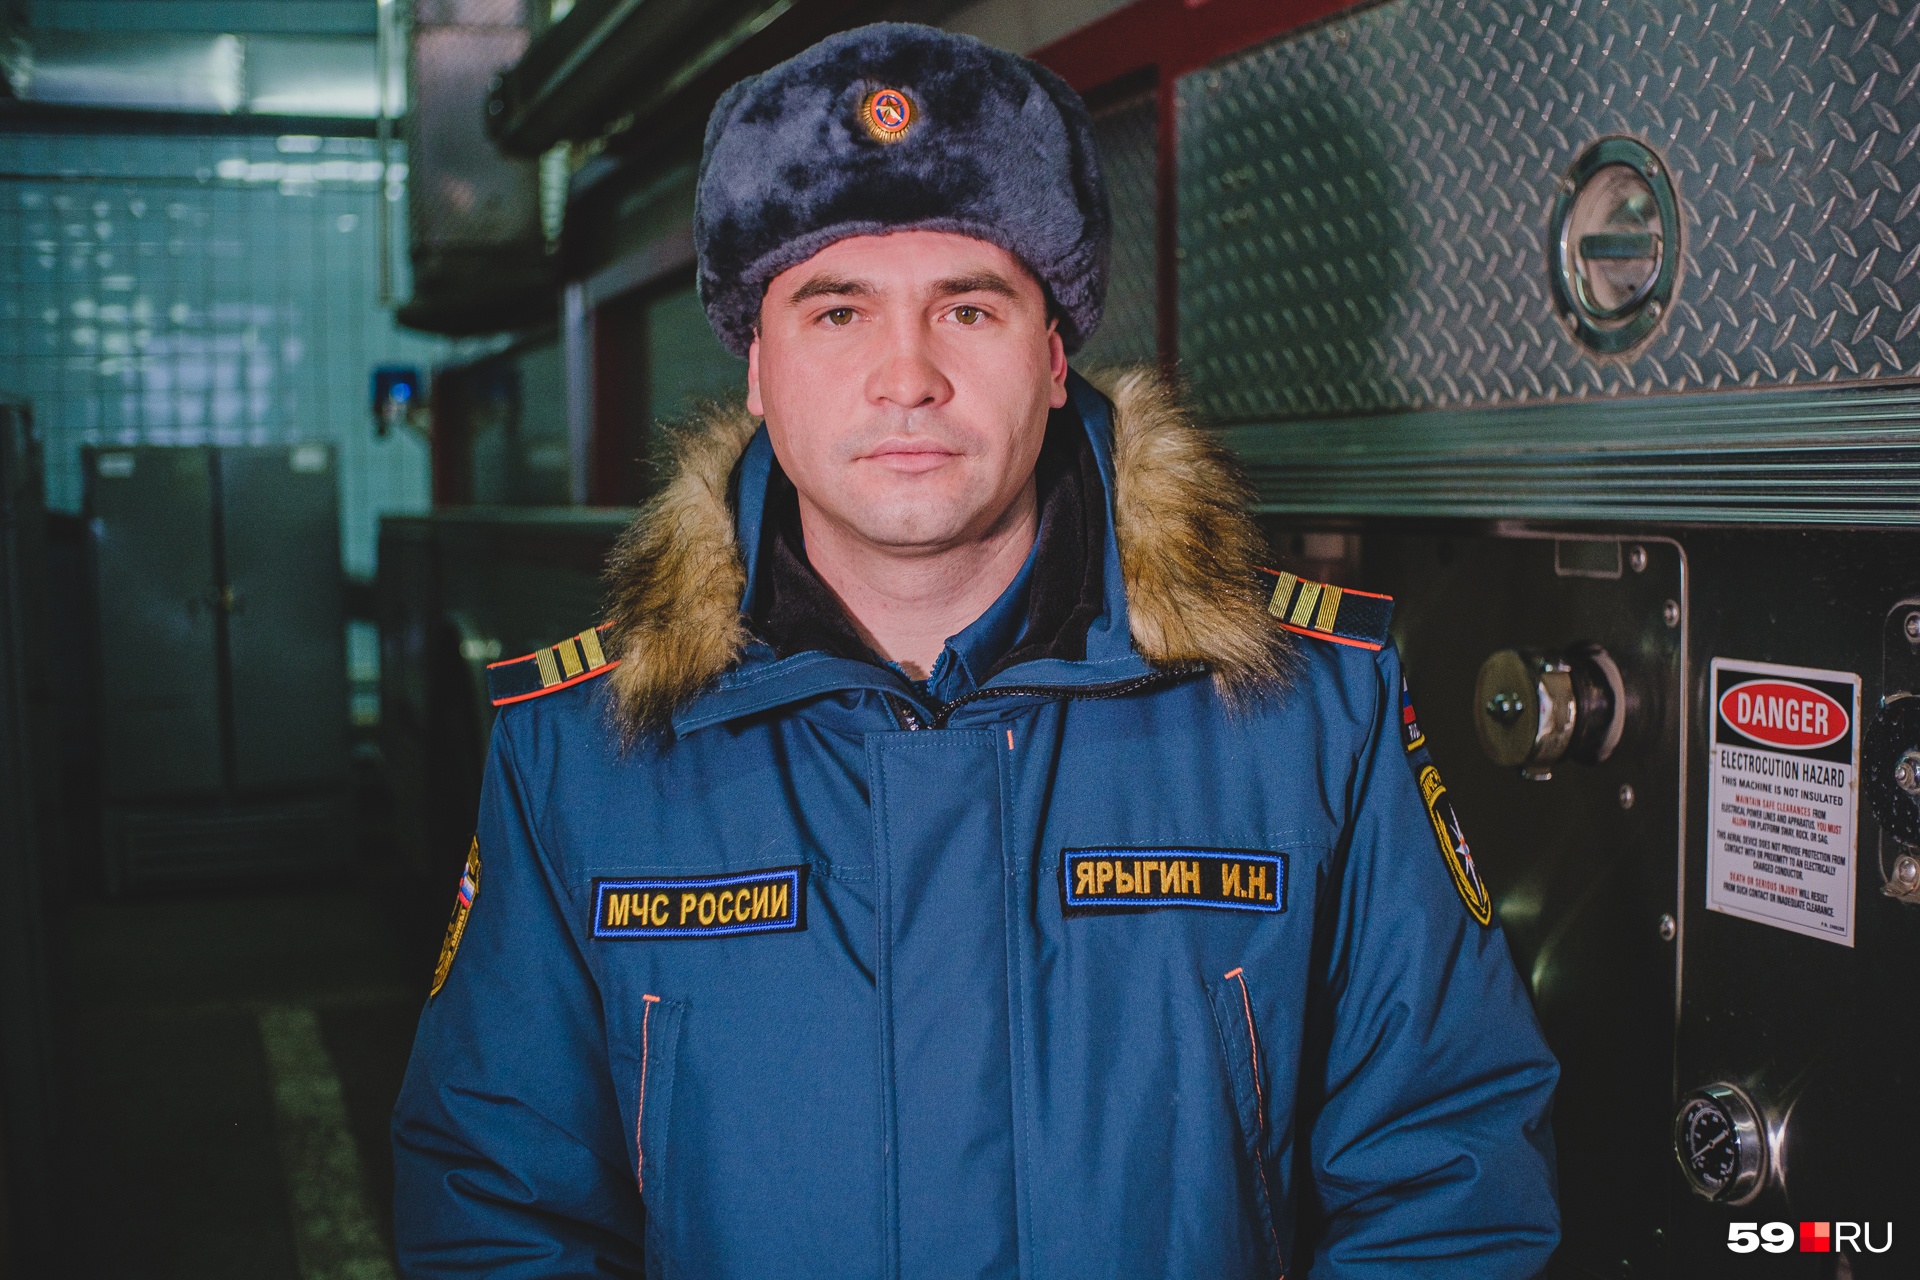 Пожарным Иван Ярыгин работает семь лет